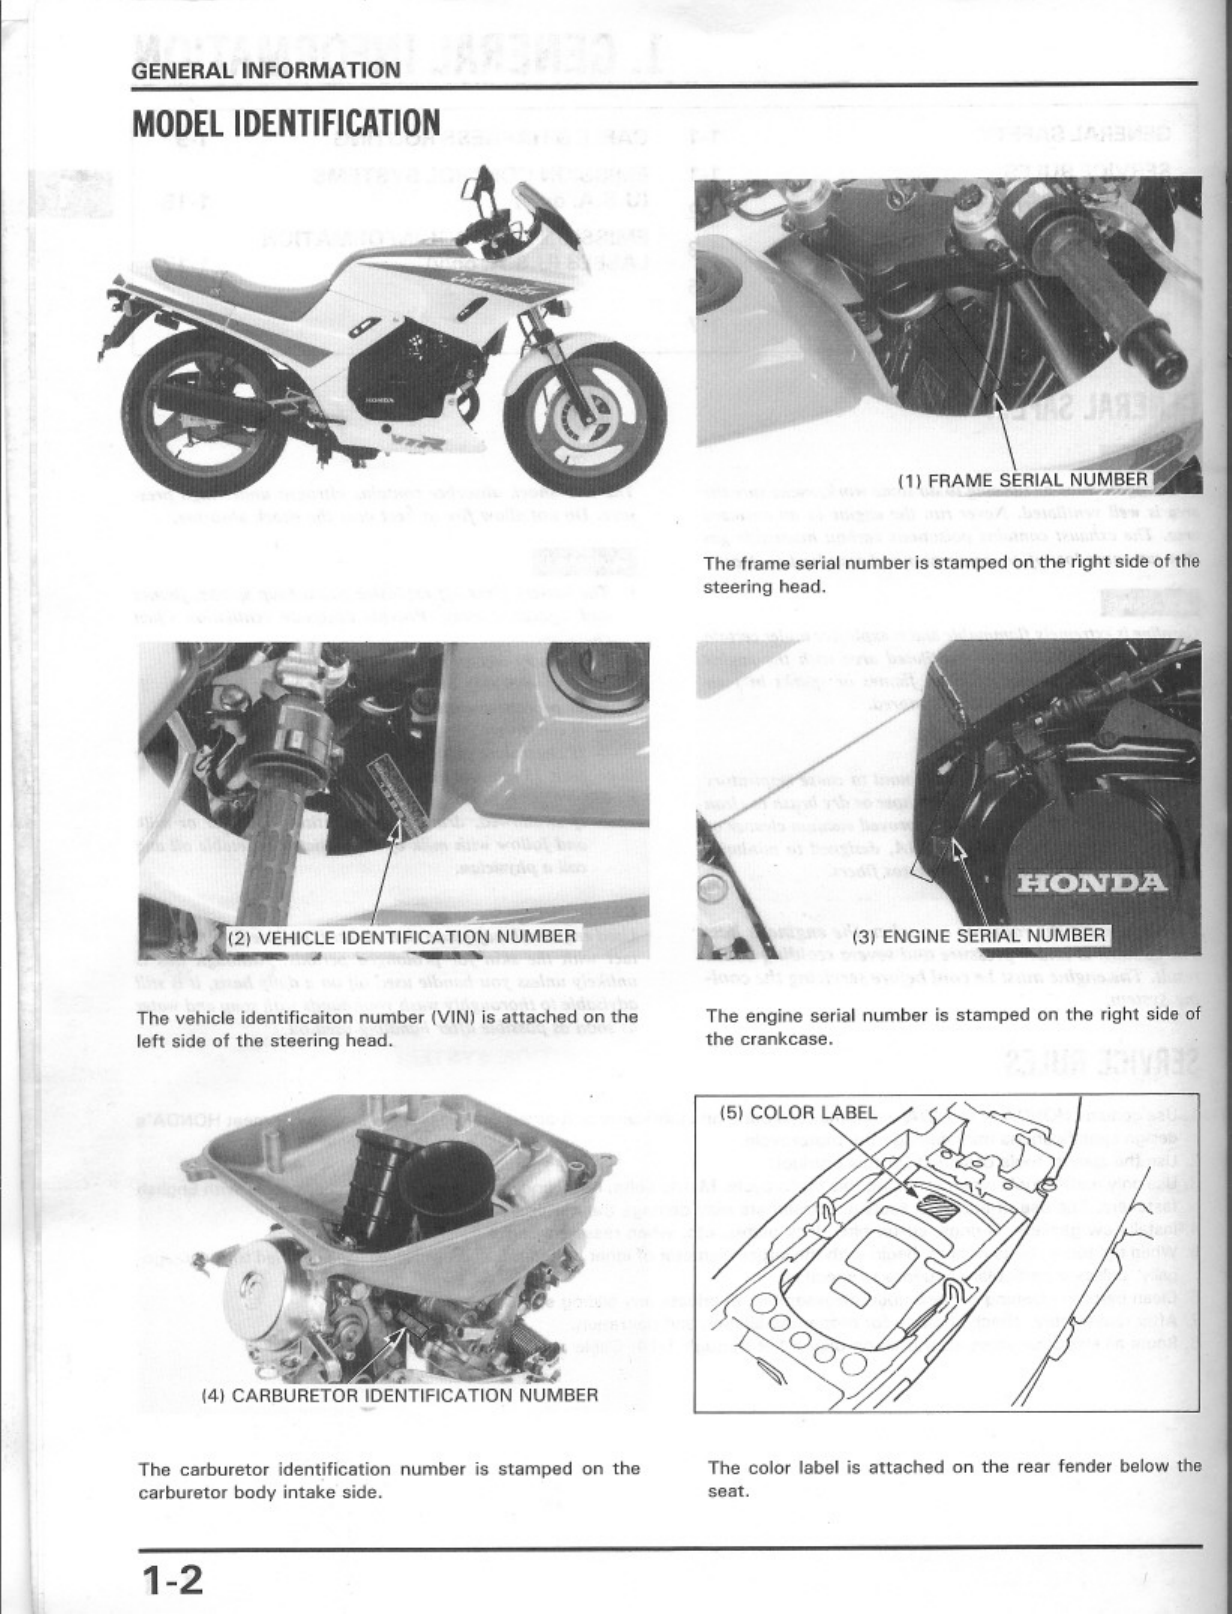 1988-1989 Honda VTR 250 Interceptor repair and service manual Preview image 5